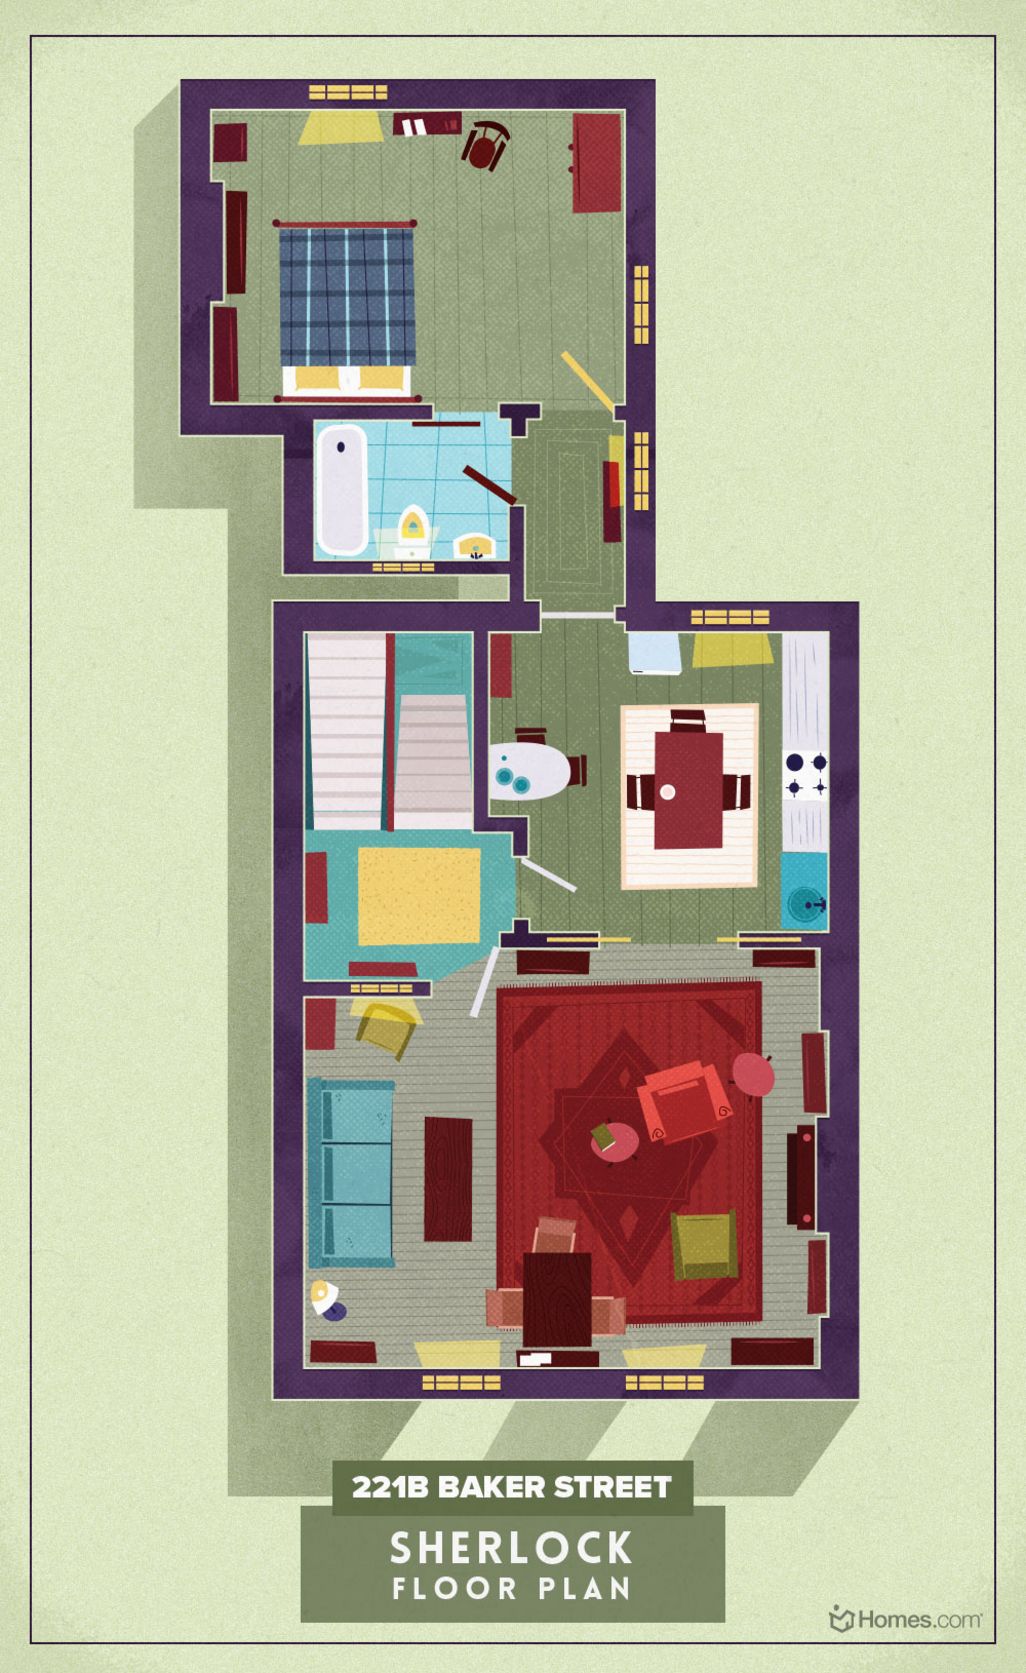 Die Wohnung von Sherlock Holmes aus der TV-Serie Sherlock im Grundriss.